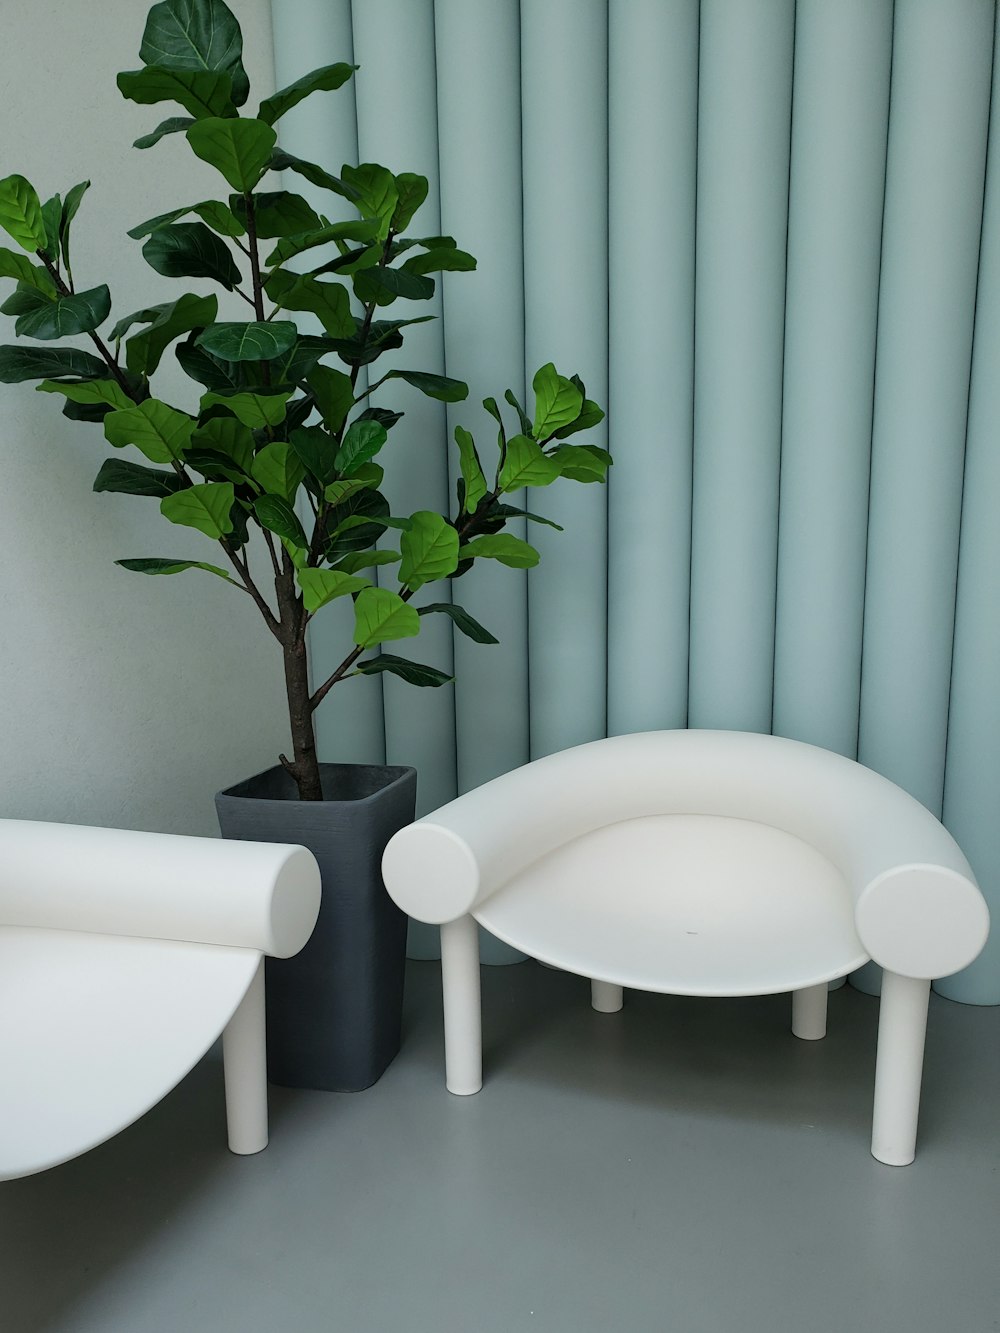 Eine Pflanze in einem schwarzen Topf neben einem weißen Stuhl